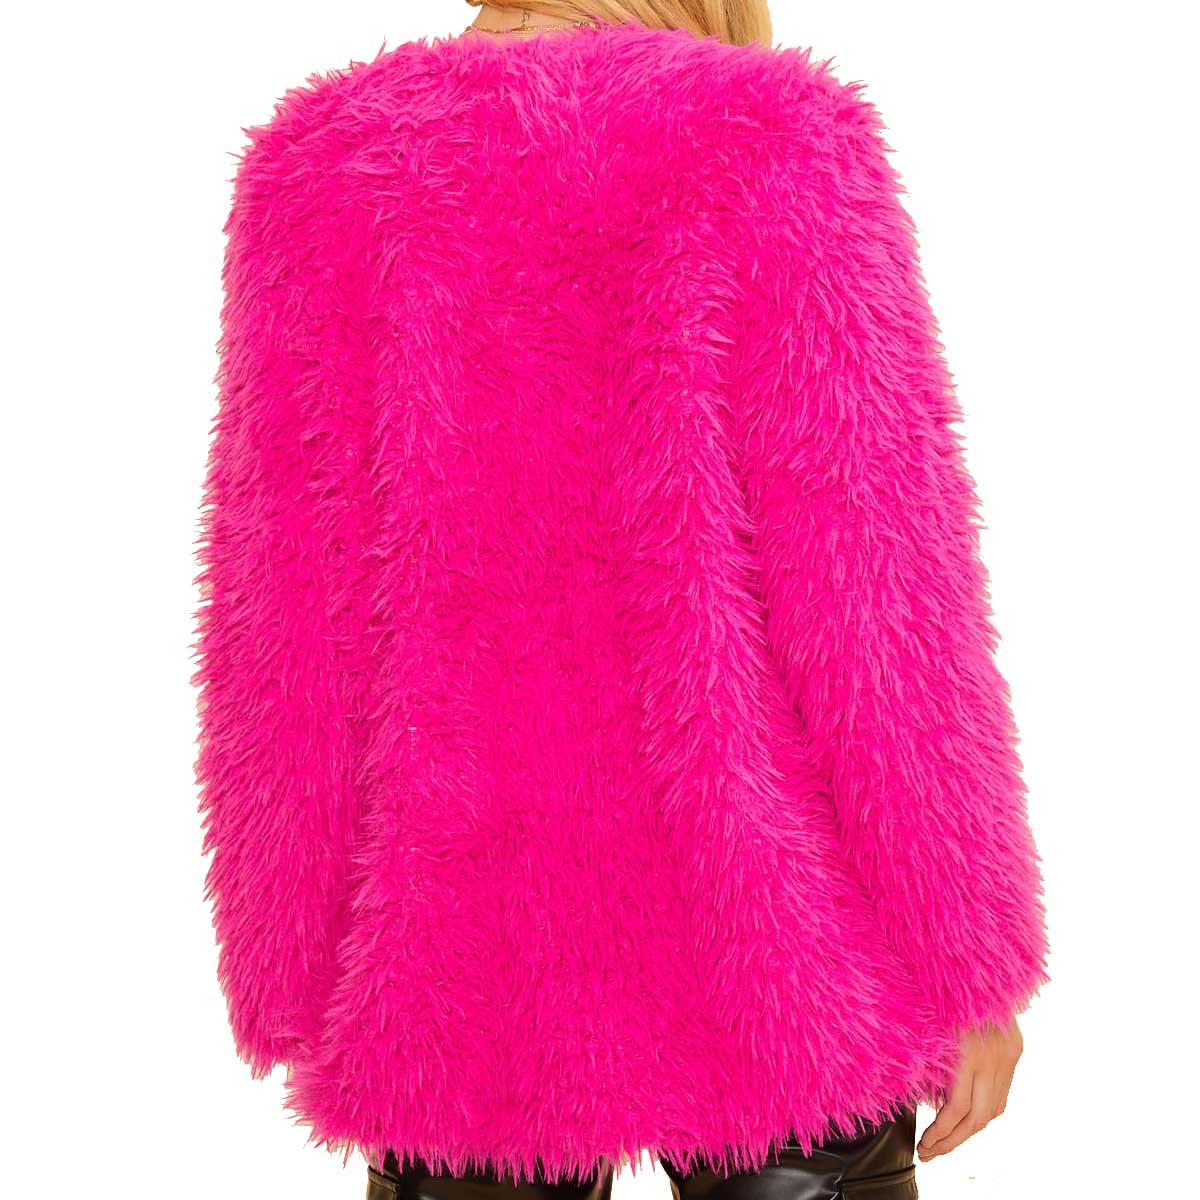 BaeVely Women's Faux Fur Cardigan Sweater - Fuchsia – Lazy J Ranch Wear ...